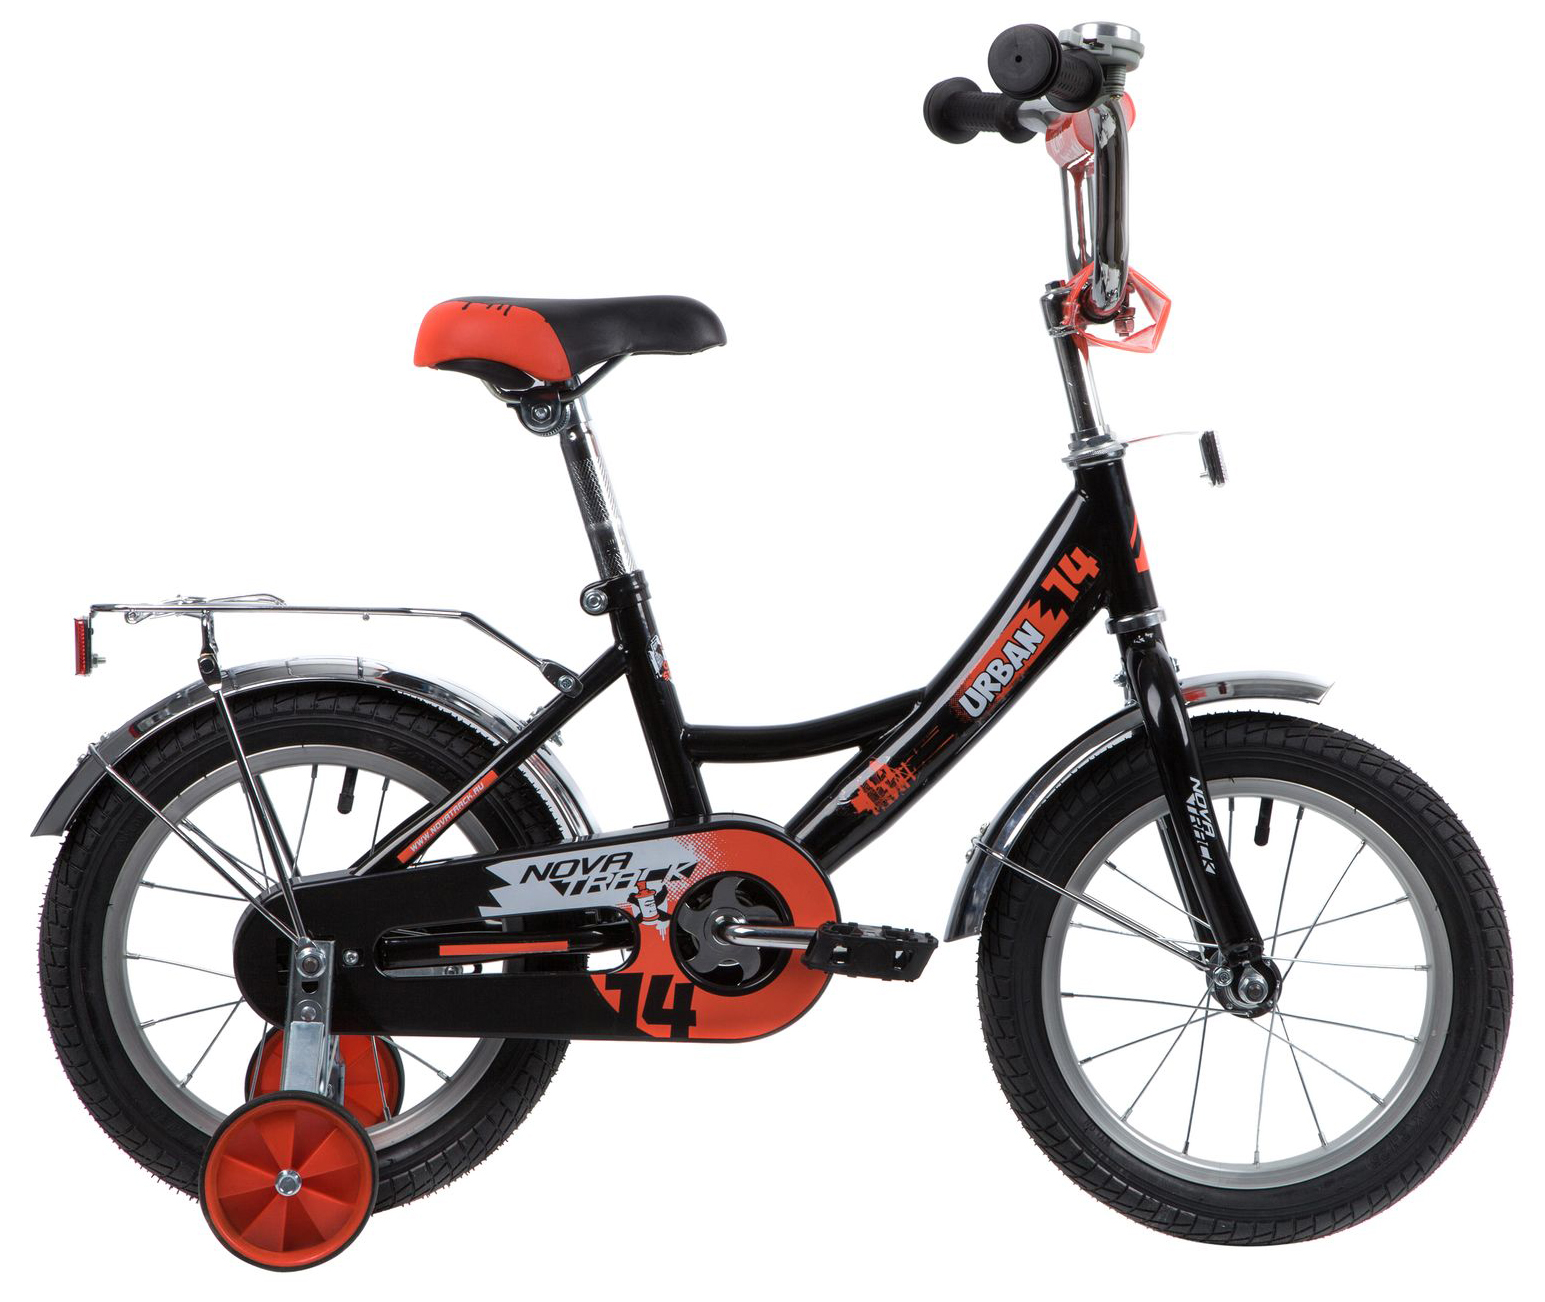  Отзывы о Детском велосипеде Novatrack Urban 14 2020